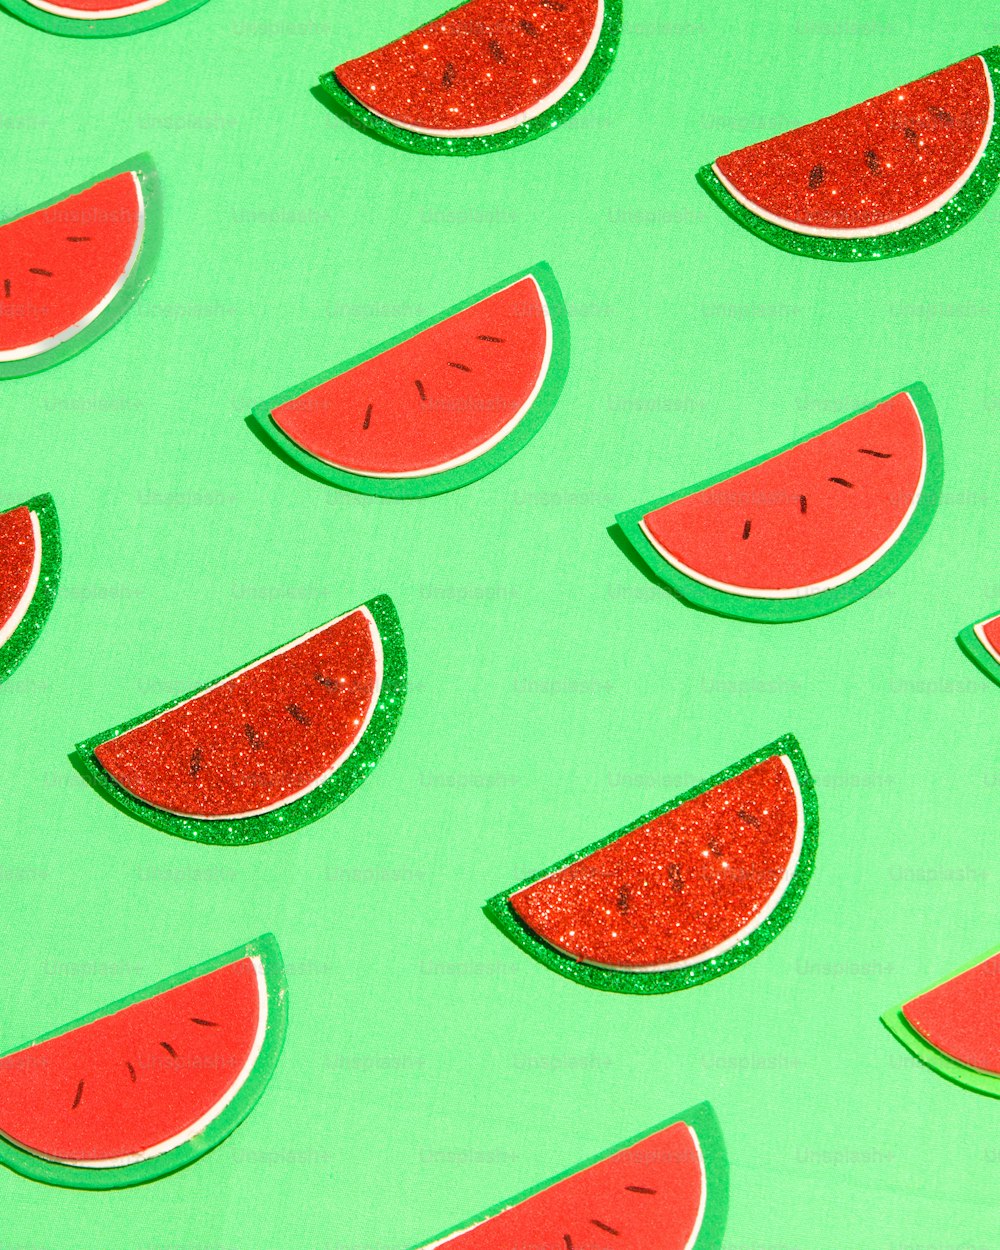 Wassermelonenscheiben auf grünem Hintergrund